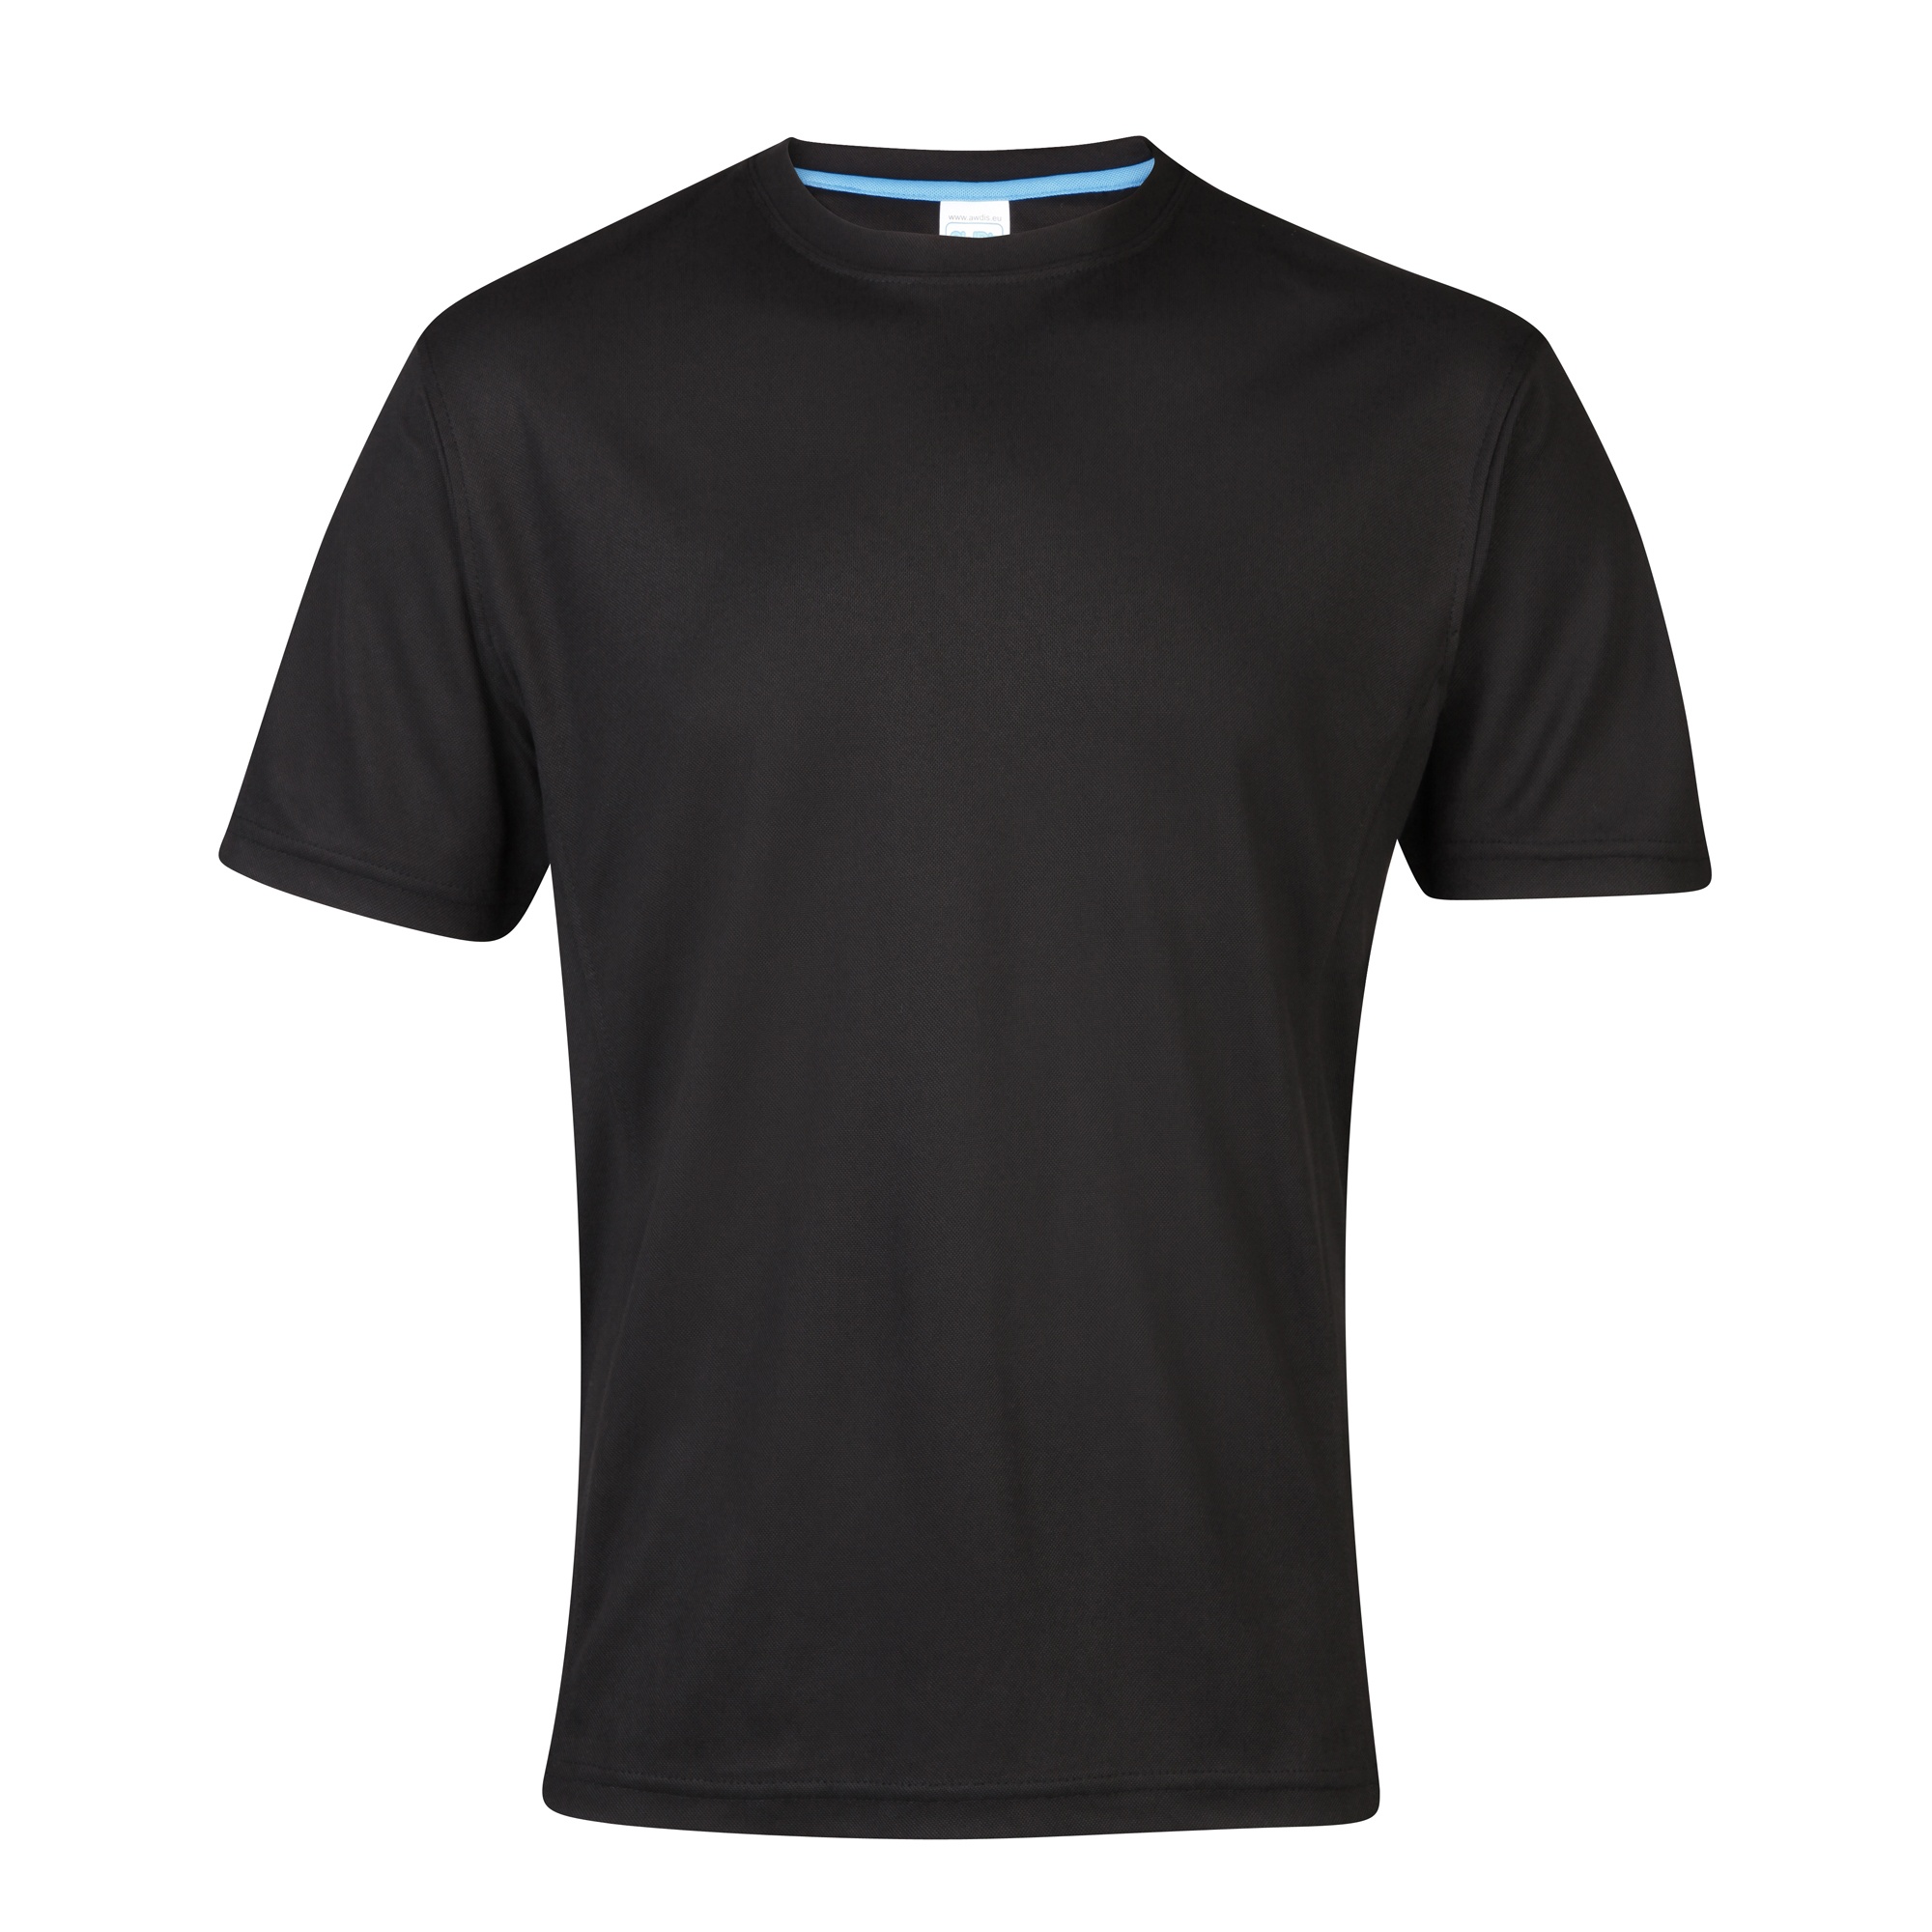 Camiseta De Deporte/ejercicio/entrenamiento Transpirable Supercool Awdis - Negro  MKP